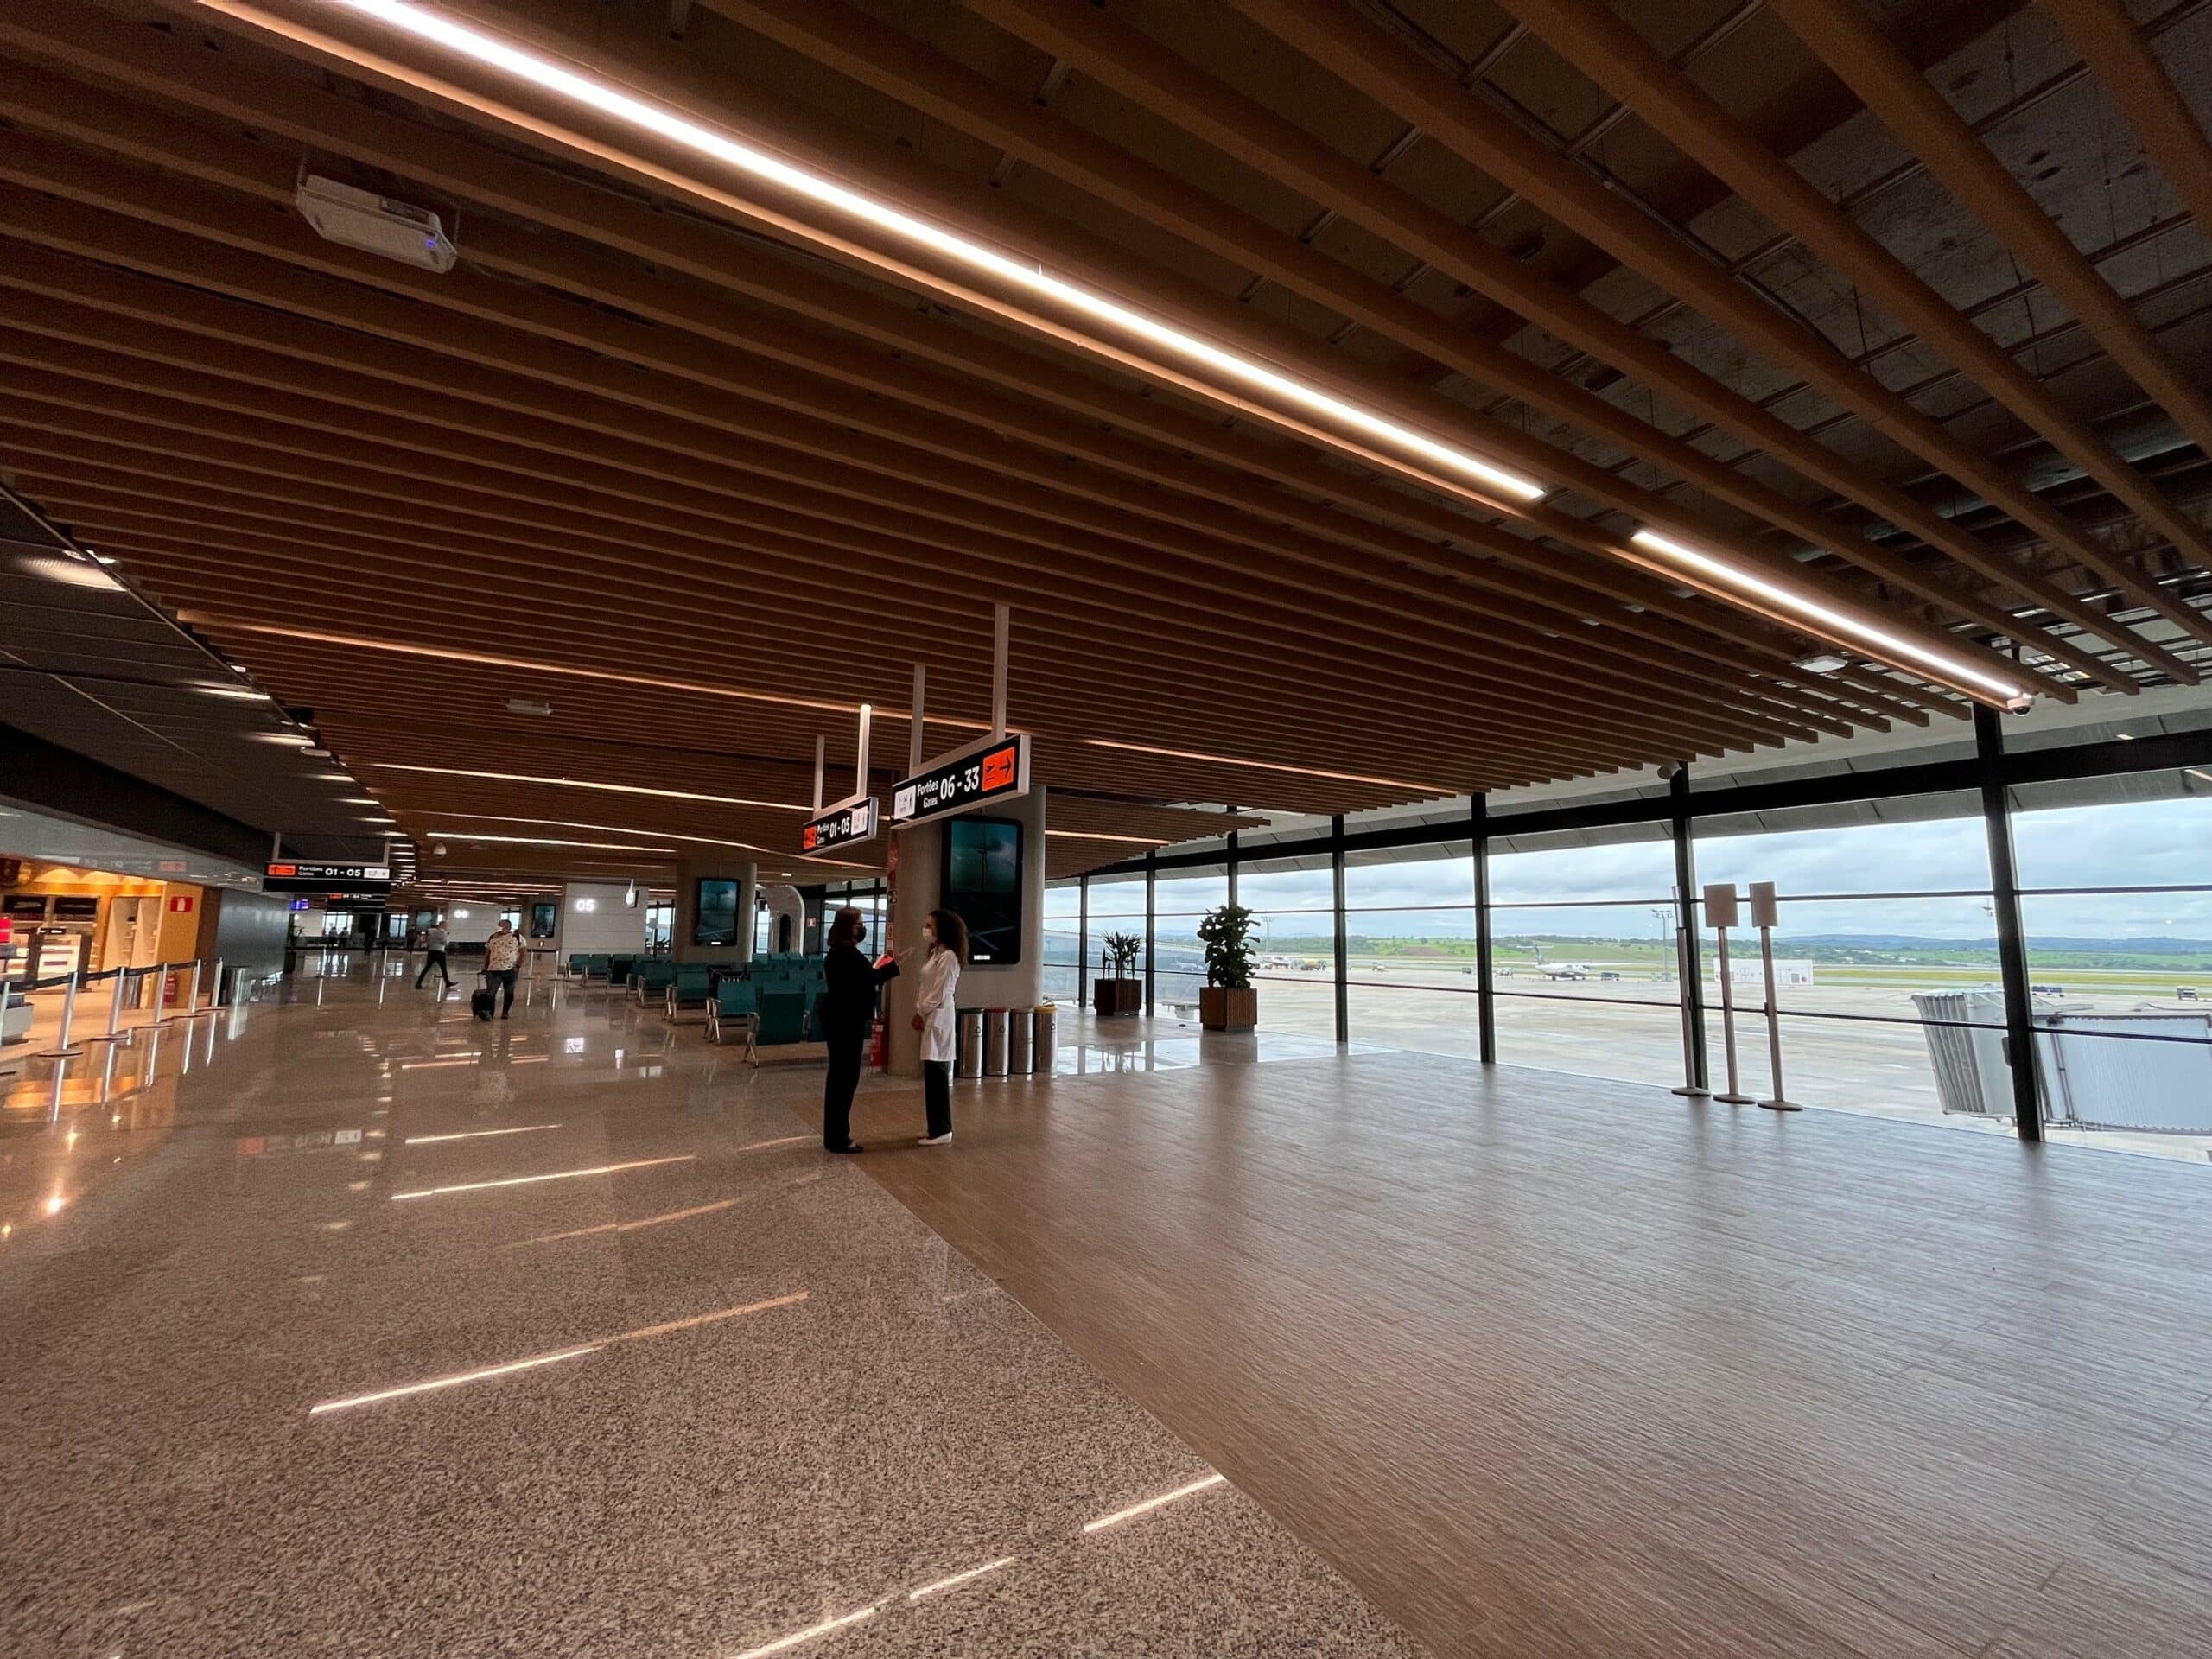 O Terminal de Passageiros 1 do Aeroporto de BH teve sua primeira fase de restauração e já está concluído